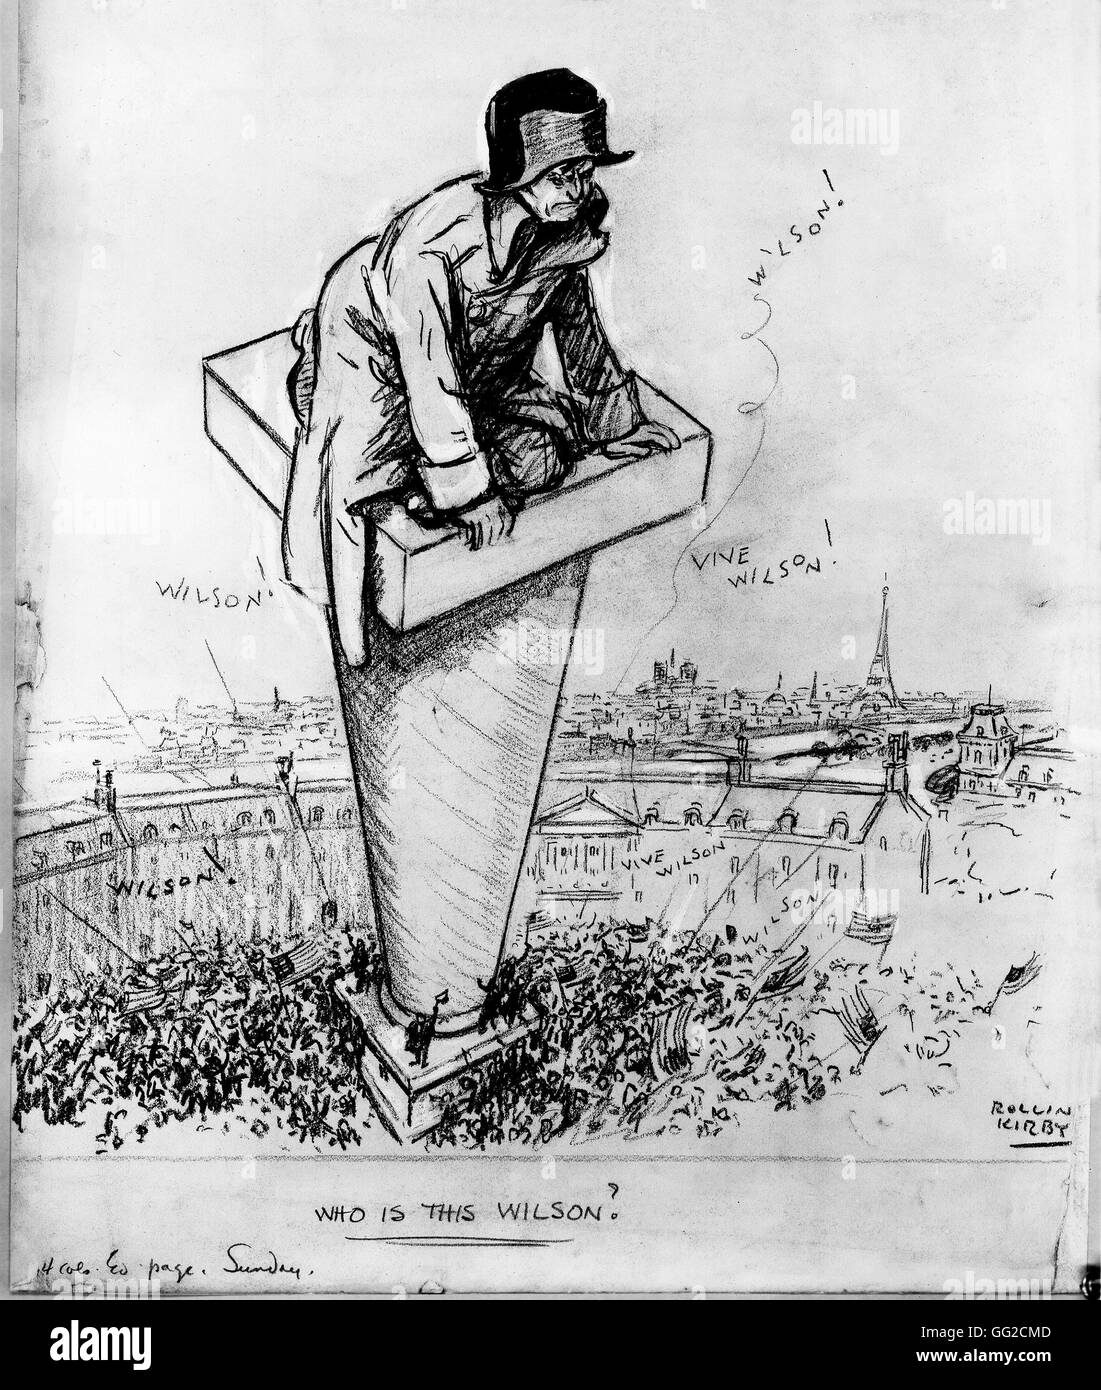 Präsident Wilsons Besuch in Frankreich am Ende des ersten Weltkrieges Karikatur von Kirby Weltkrieg, Frankreich, 1919. Washington, Library of Congress Stockfoto